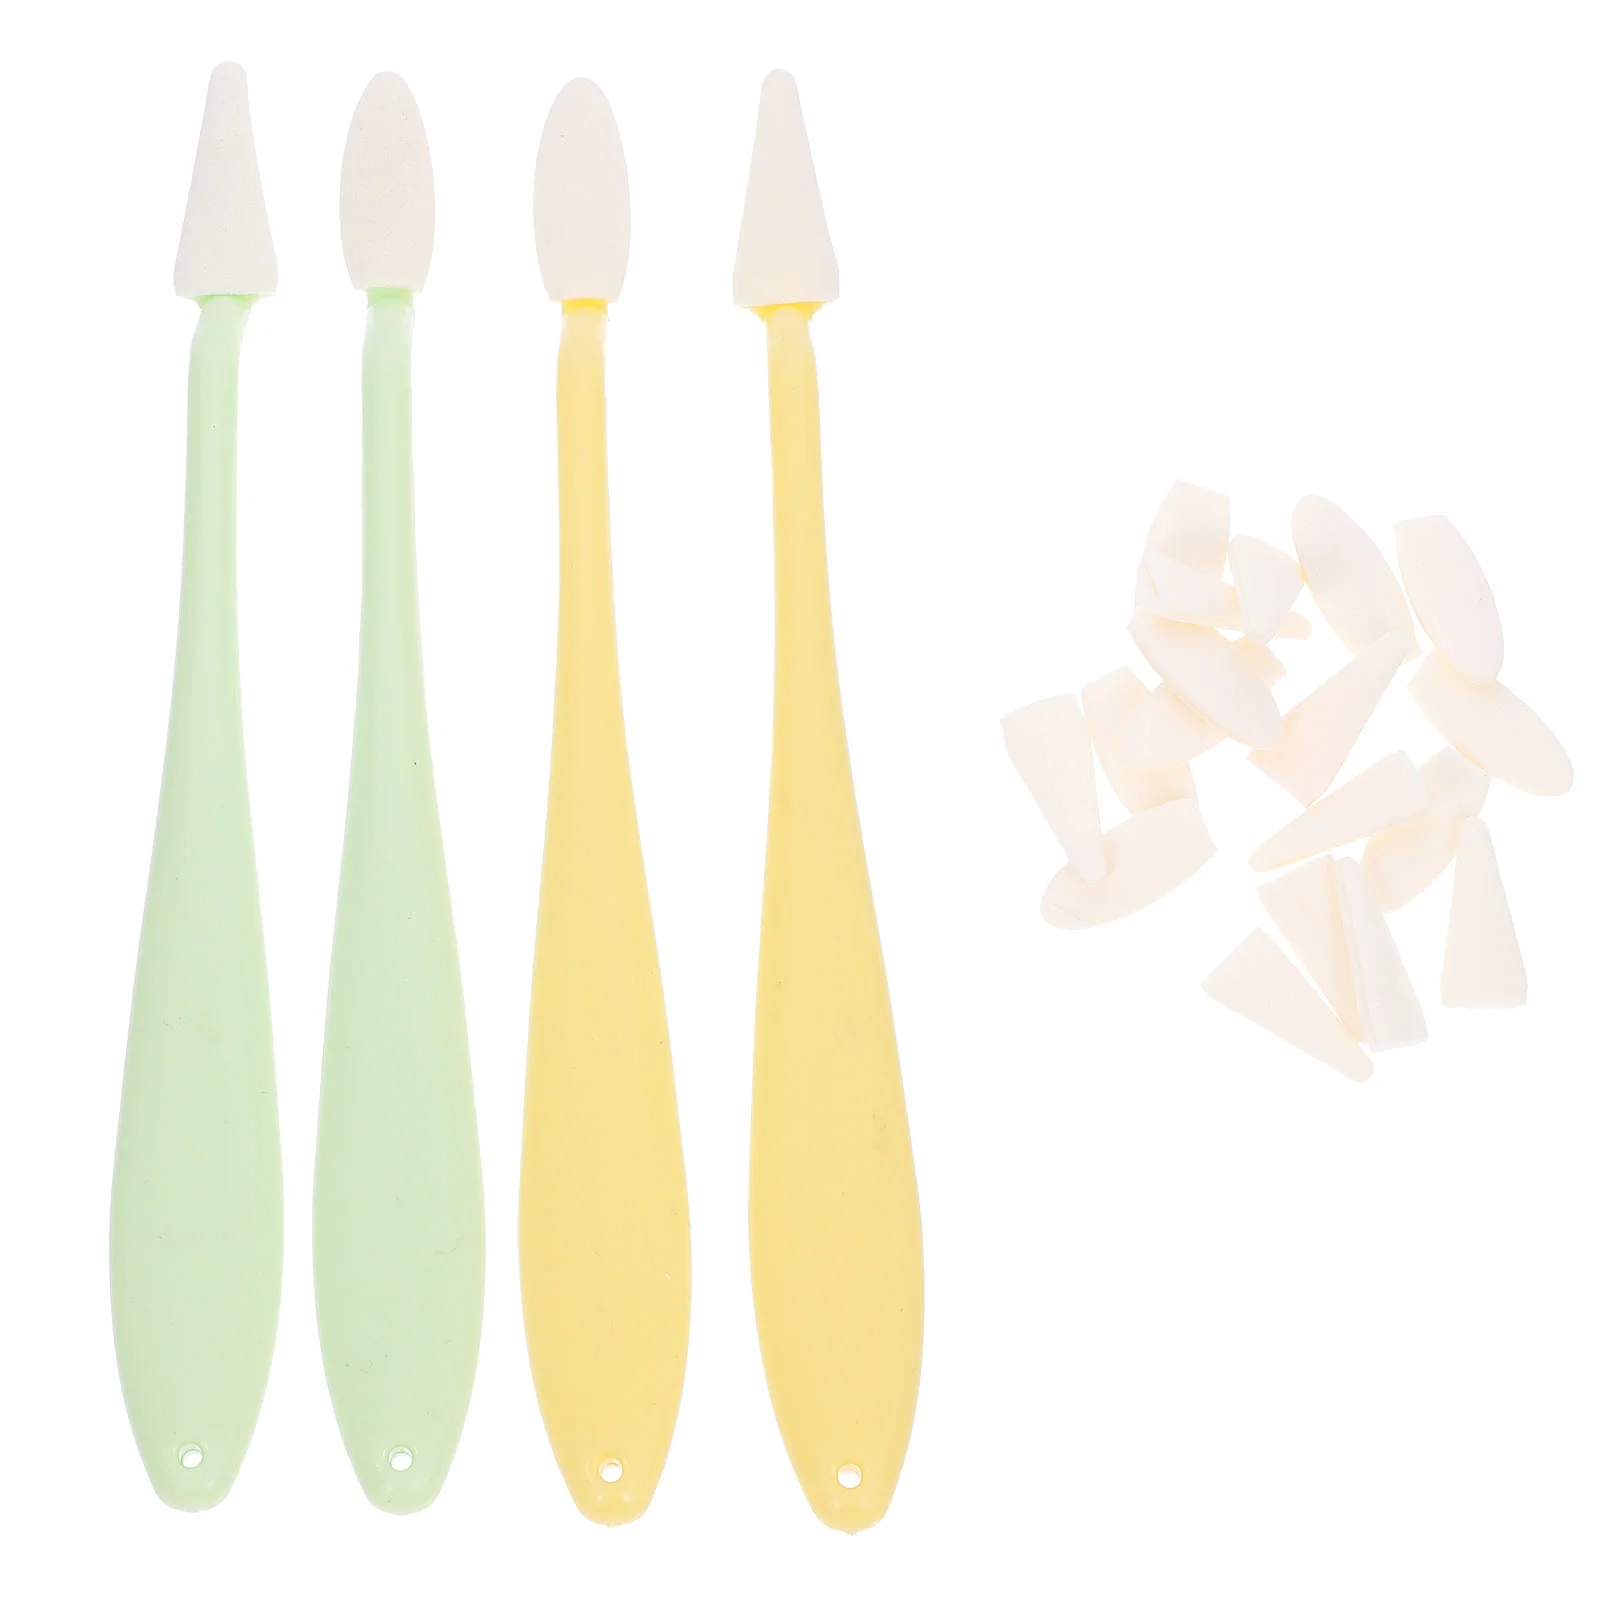 4 Pcs Knife Cleaning Set Tools Blending for Drawing Sketch Sharpener Plastic Eraser Charcoal Student Sponge Sketching Pencil